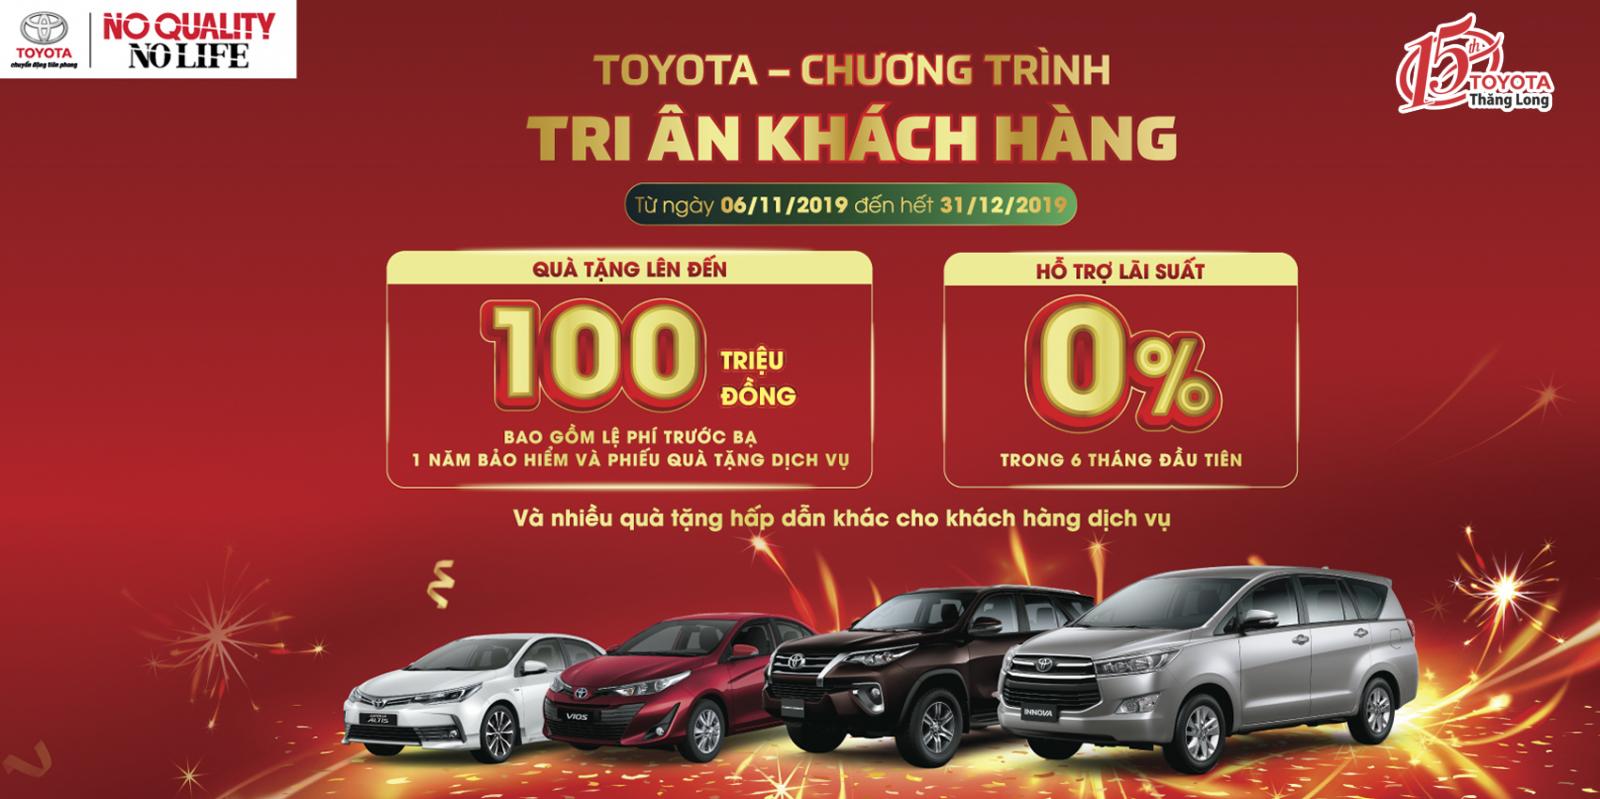 Có đại lý "chống lưng" bằng ưu đãi khủng, doanh số Toyota Việt Nam vẫn lao dốc a1